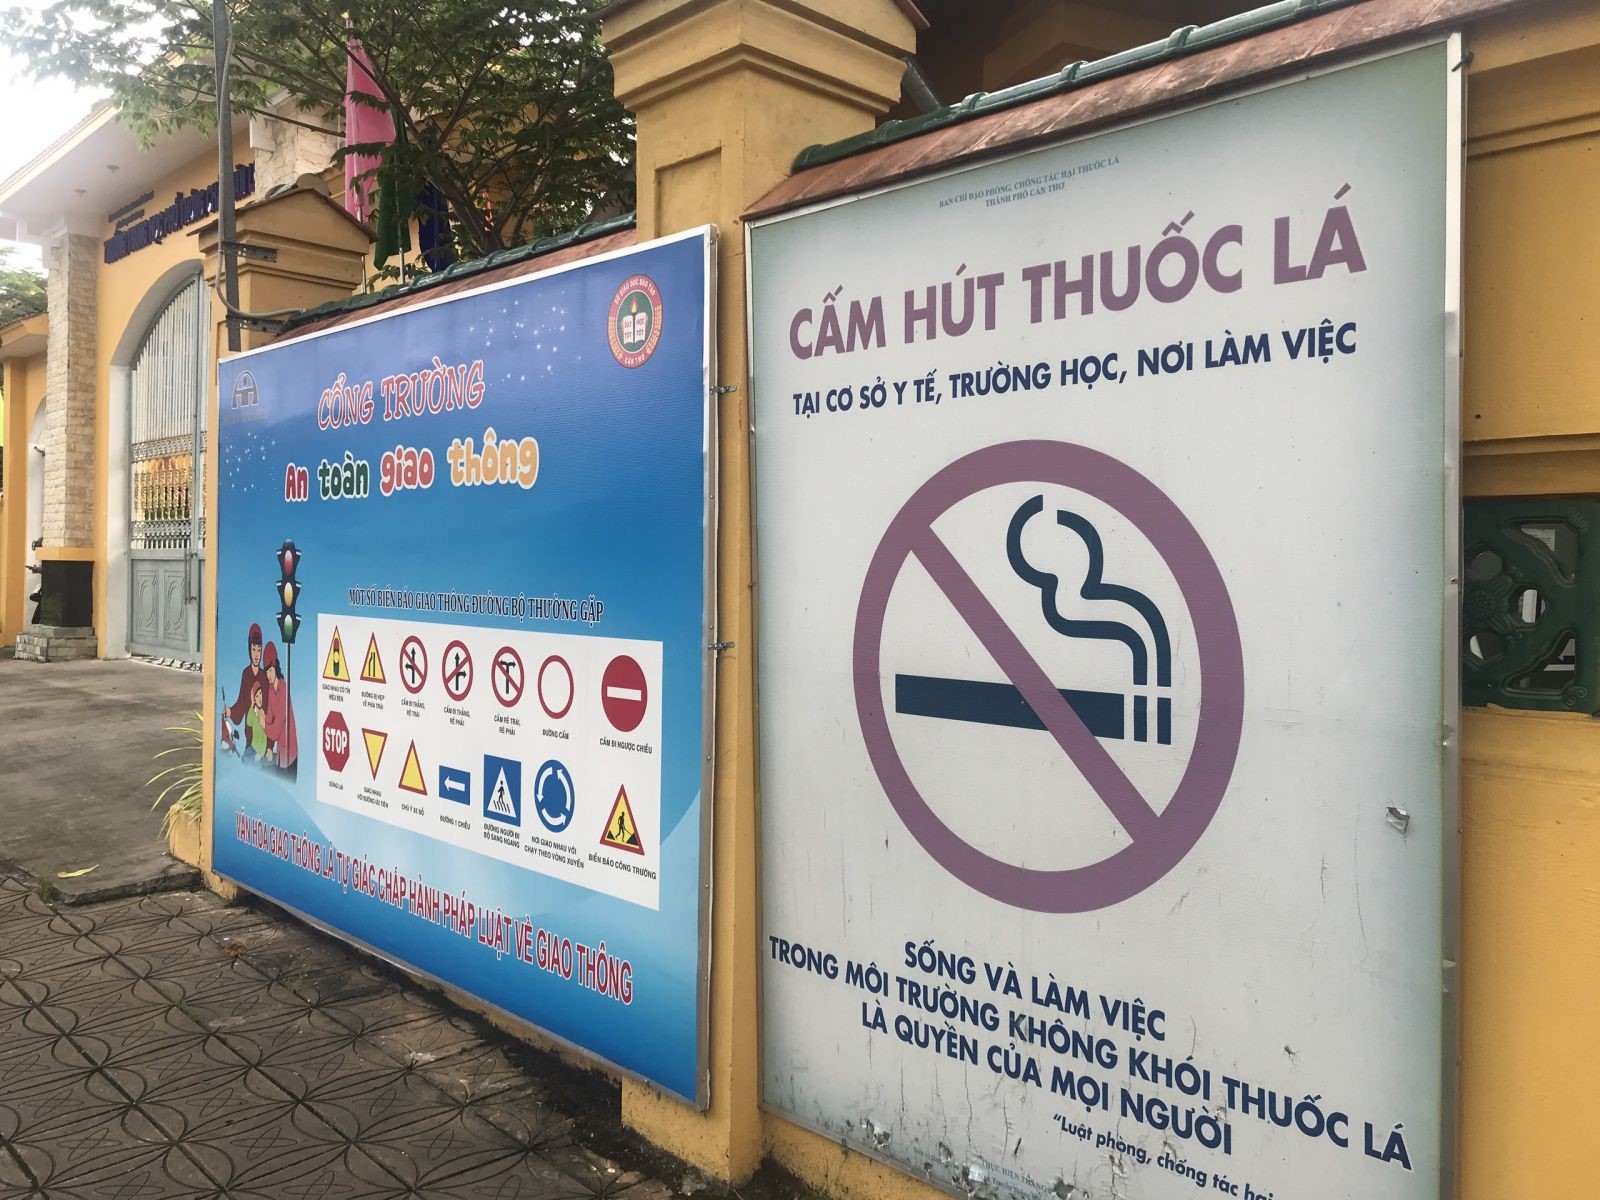 Bảng tuyên truyền cấm hút thuốc lá ở Trường THPT Châu Văn Liêm. Ảnh: Thiên Thanh